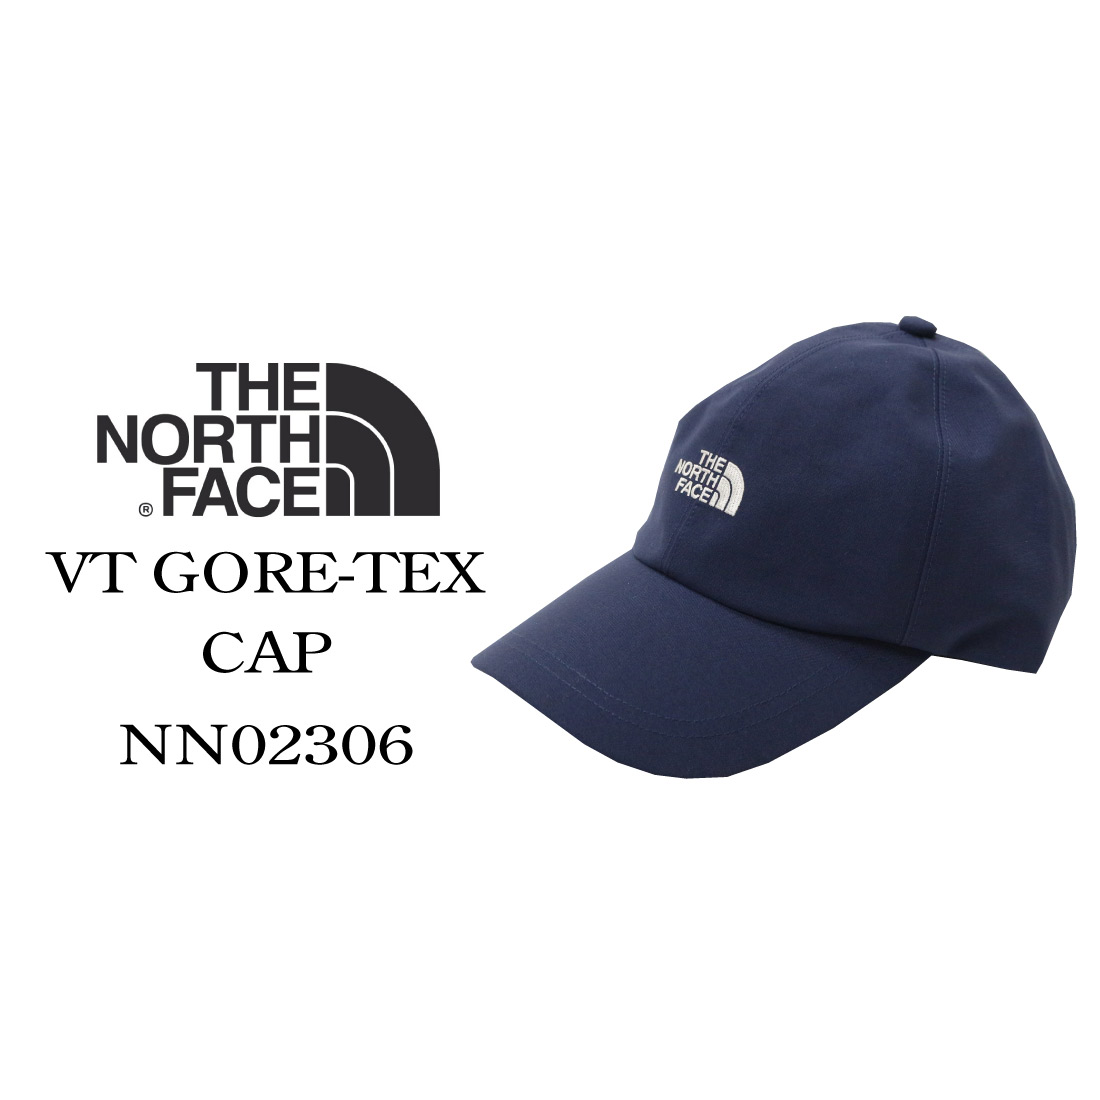 THE NORTH FACE ザ ノースフェイス 帽子 ヴィンテージゴアテックスキャップ NN02306 防水 ベースボール ゴールドウィン  正規販売店 アウトドア